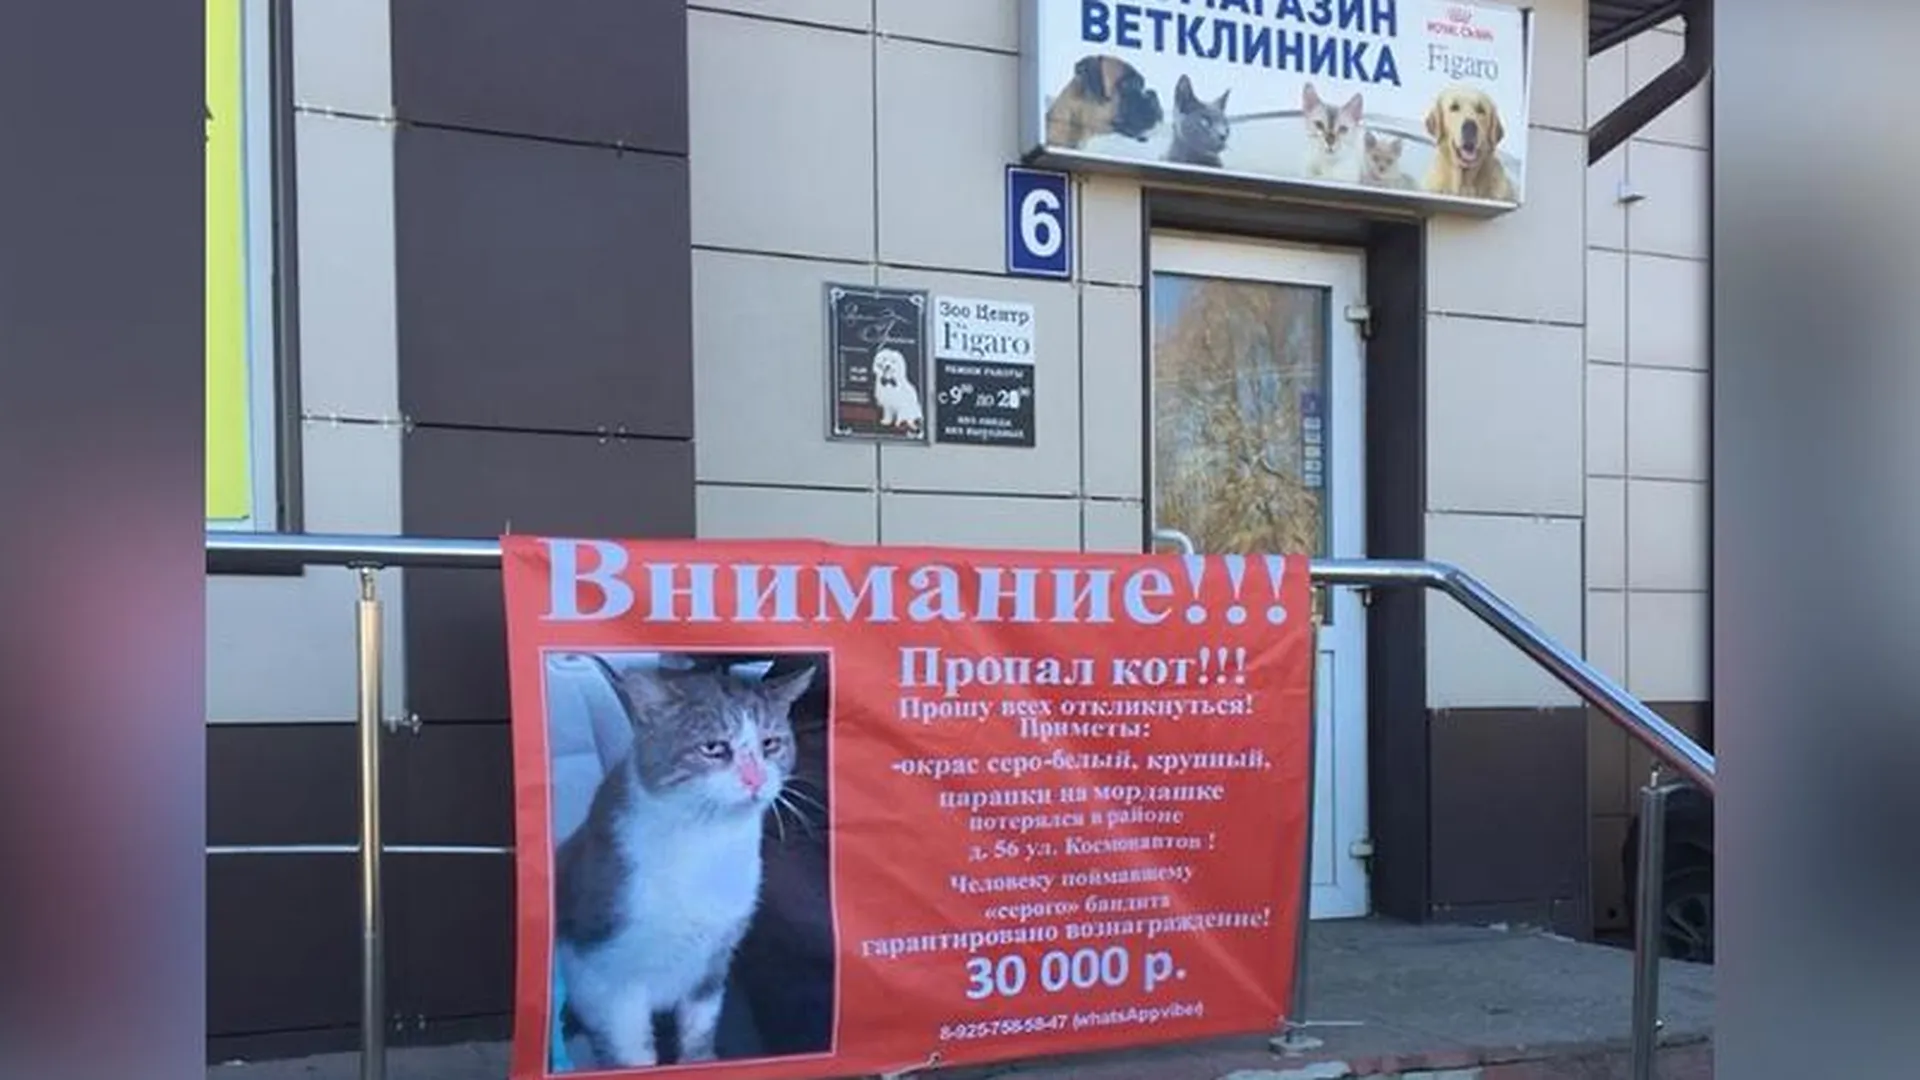 Операцию по поиску кота, за которого обещали 30 тыс. руб., организовали в Дмитрове